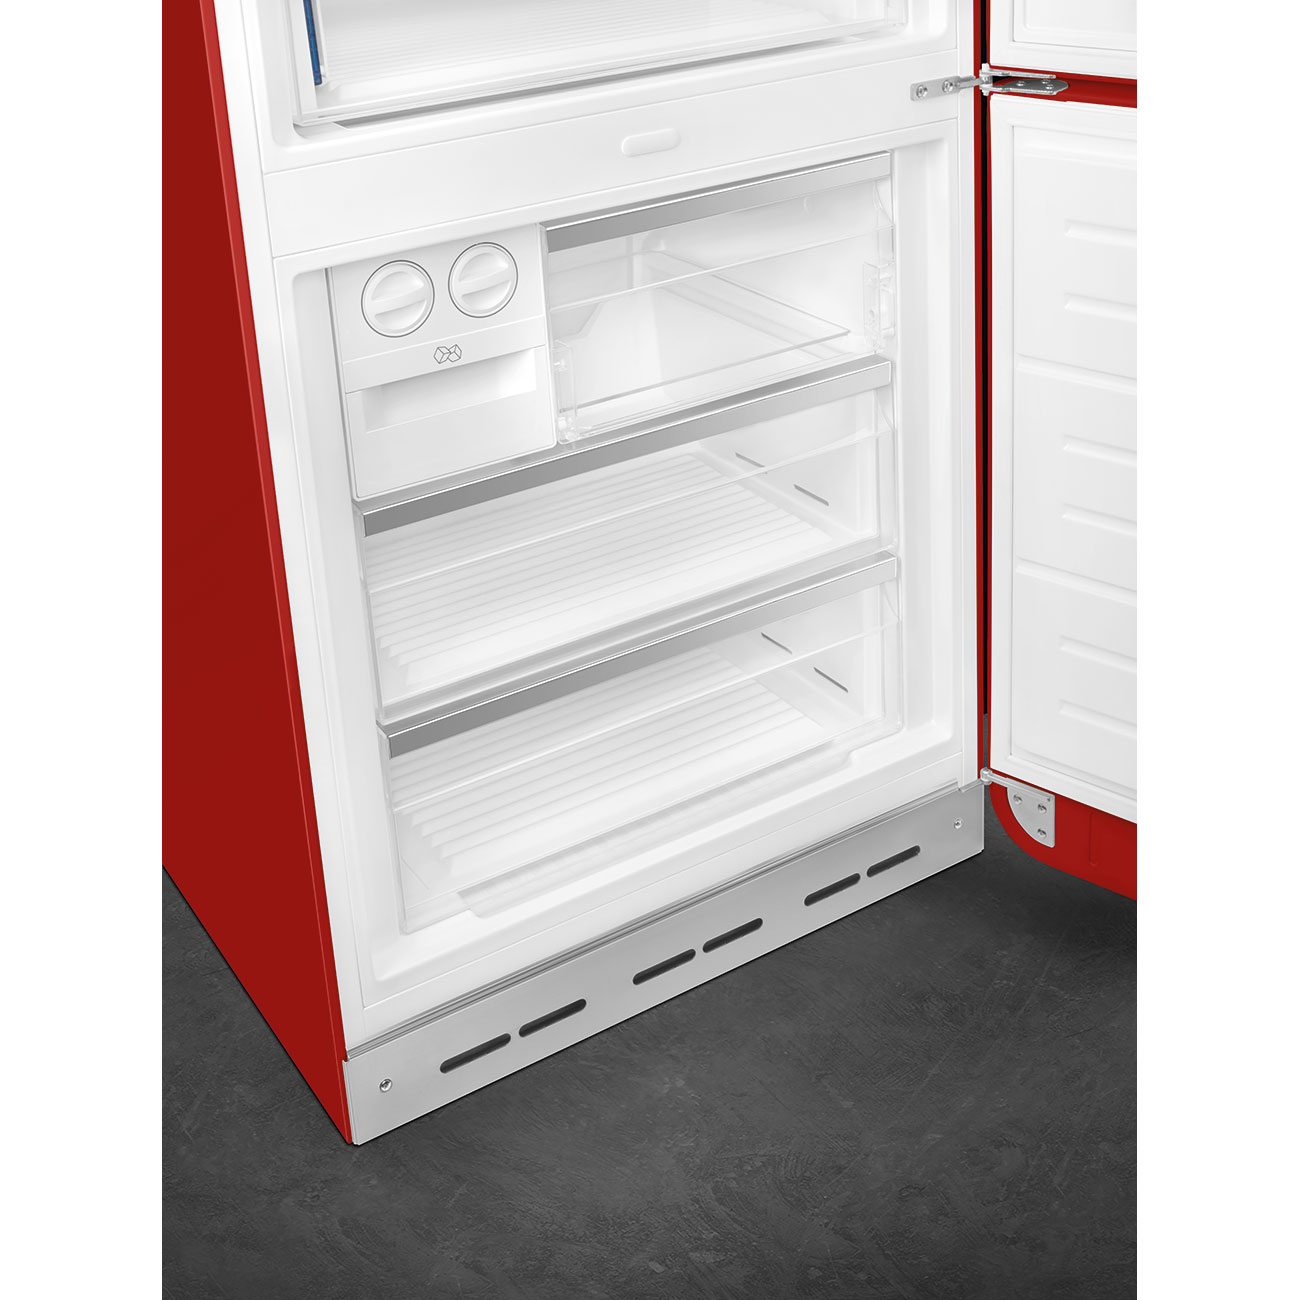 Red refrigerator - Smeg_9